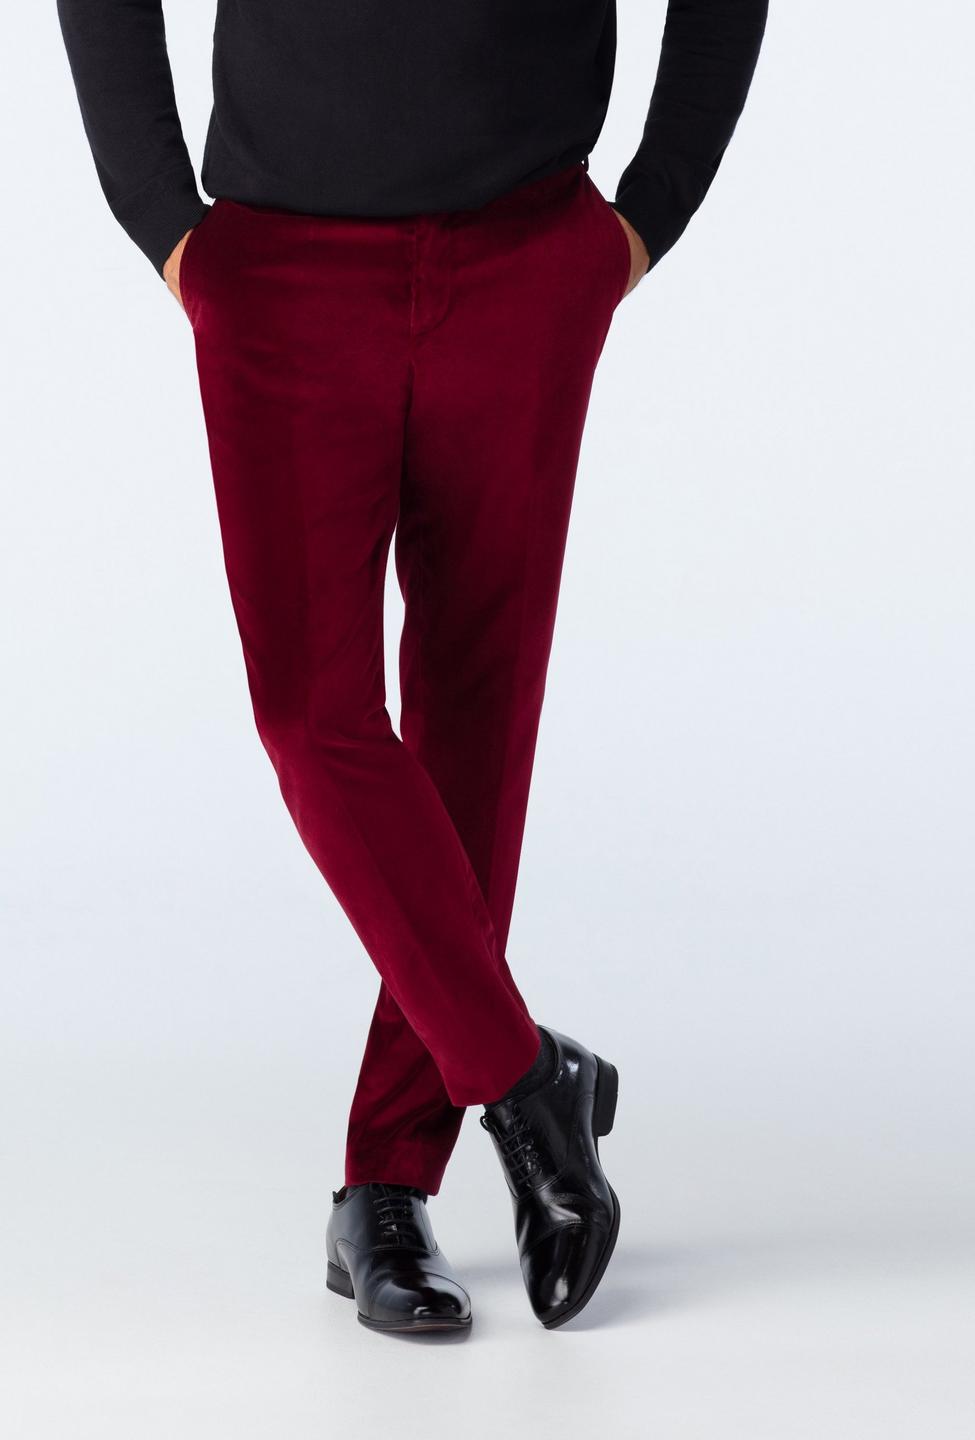 Vintage Versace velvet pants burgundy | Vintage Y2K deadstock clothing